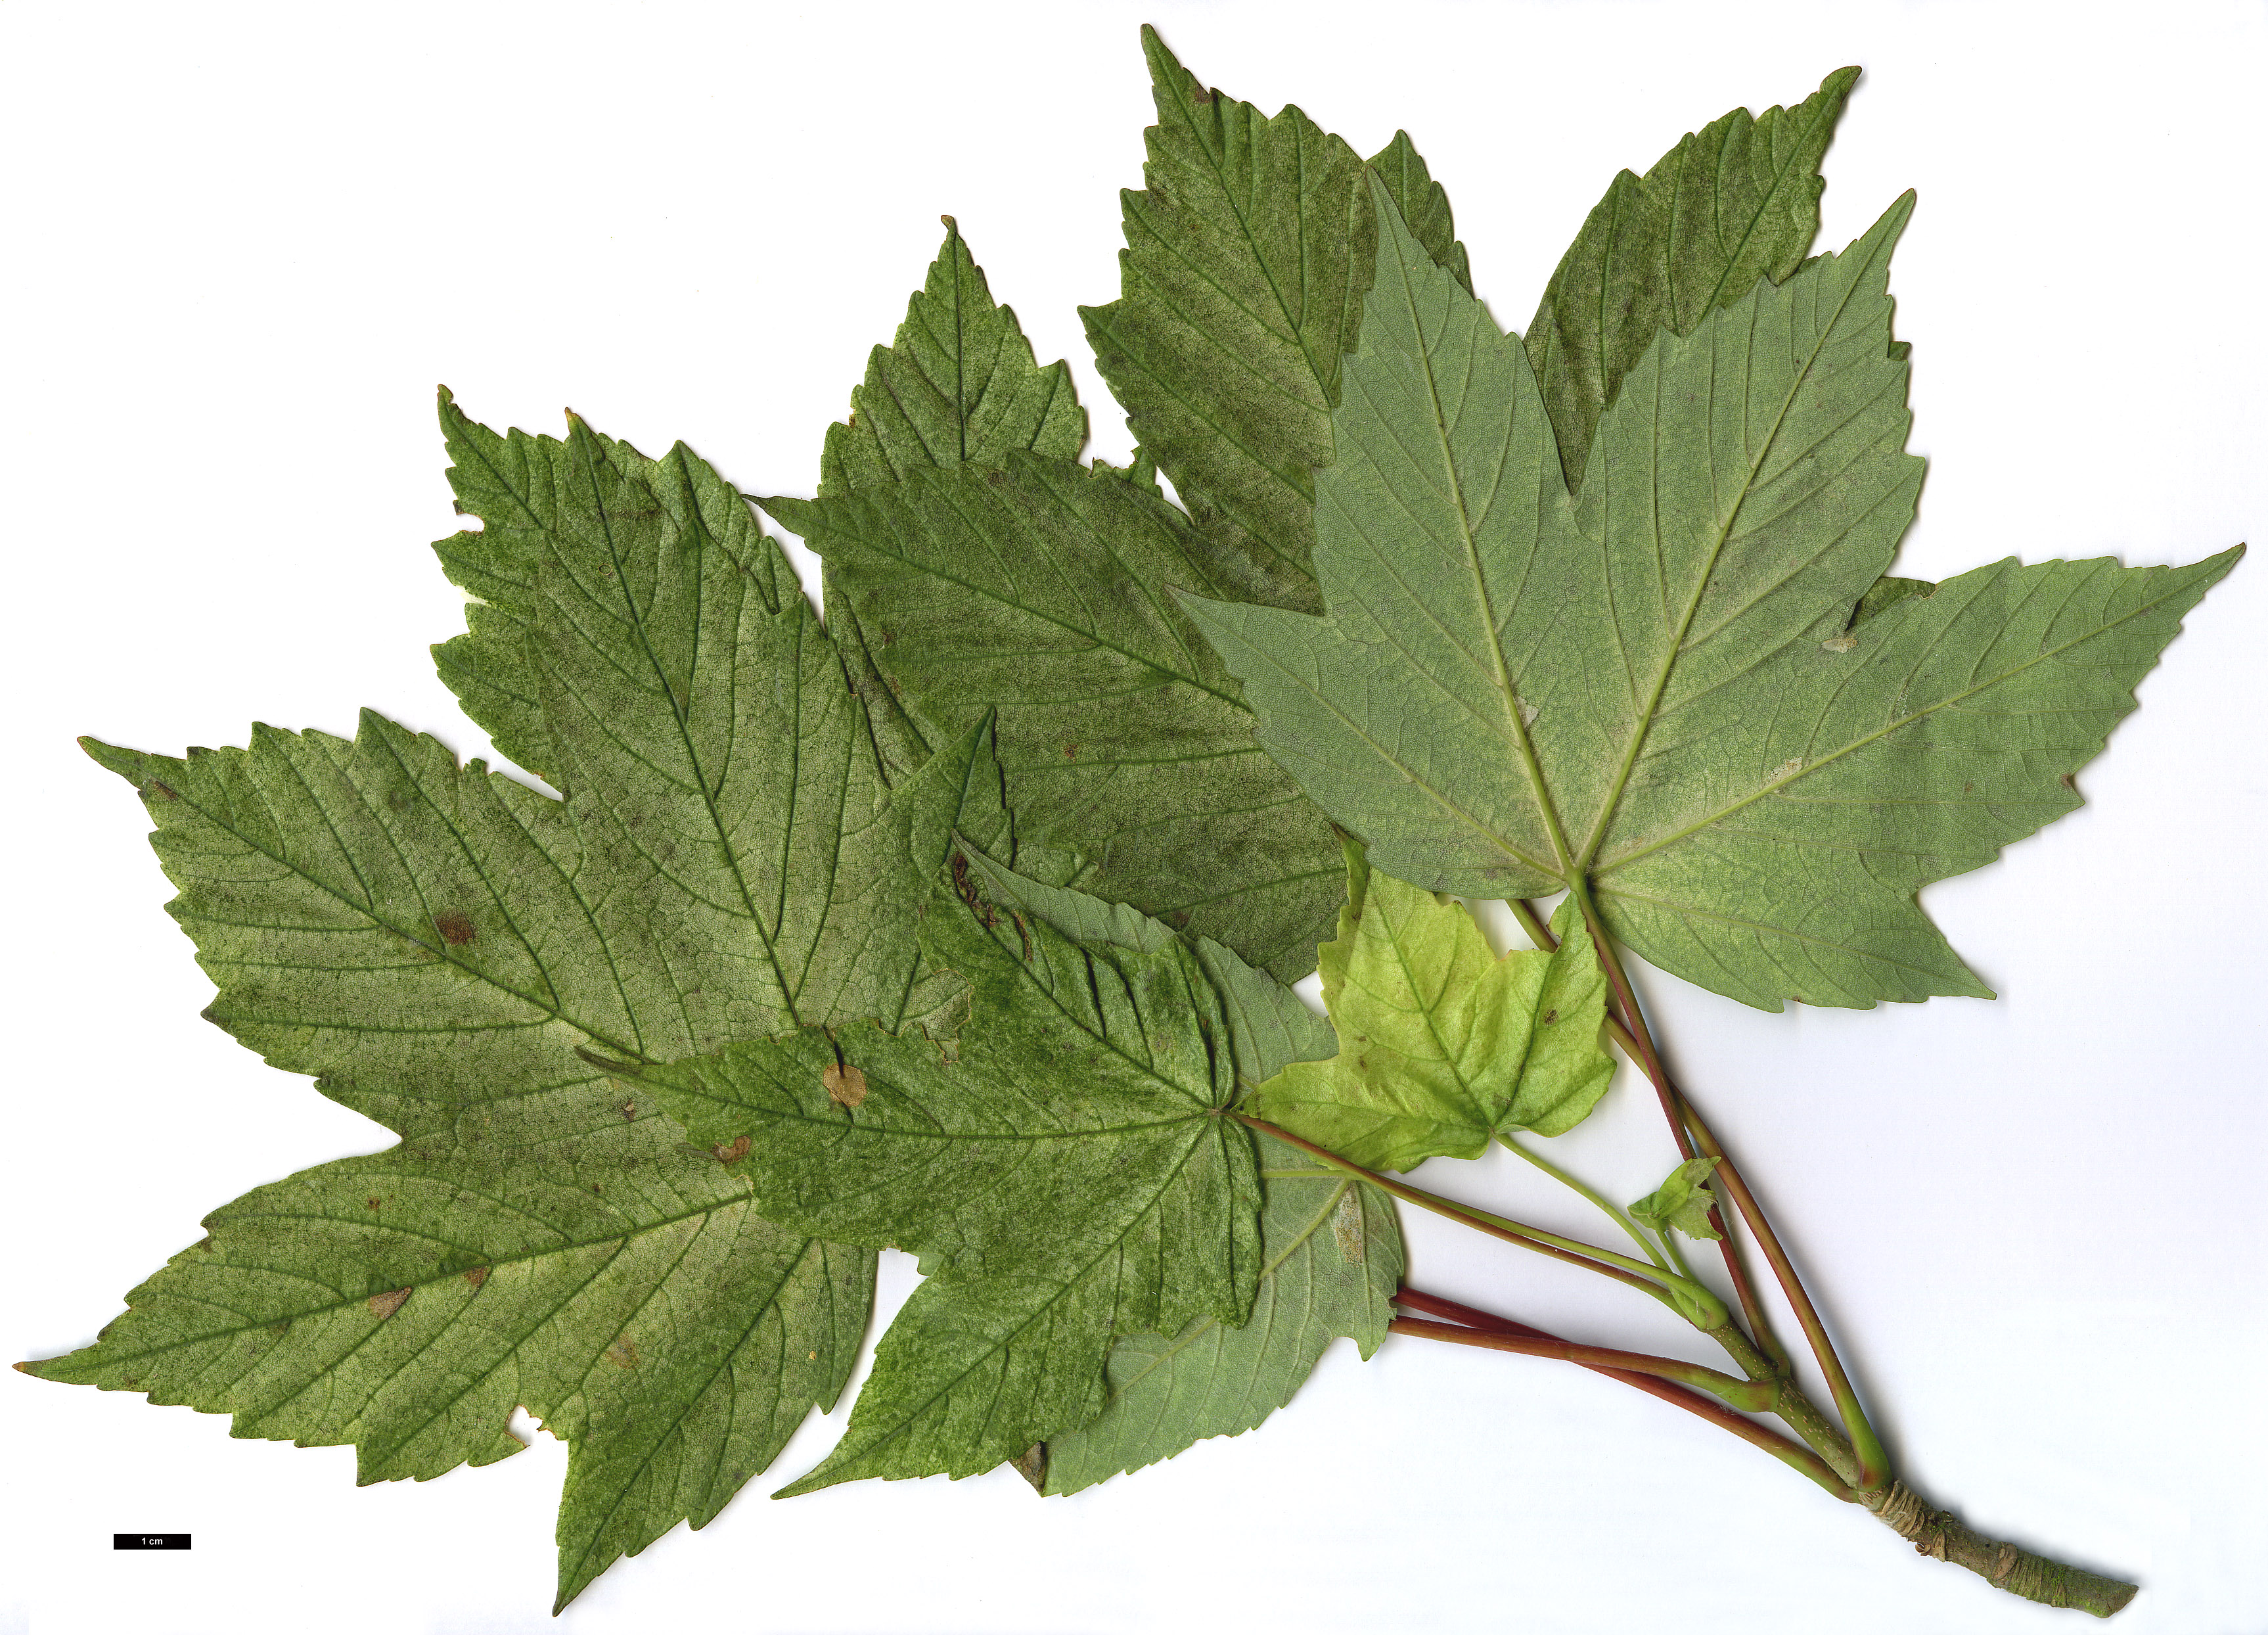 High resolution image: Family: Sapindaceae - Genus: Acer - Taxon: pseudoplatanus - SpeciesSub: 'Brilliantissimum'